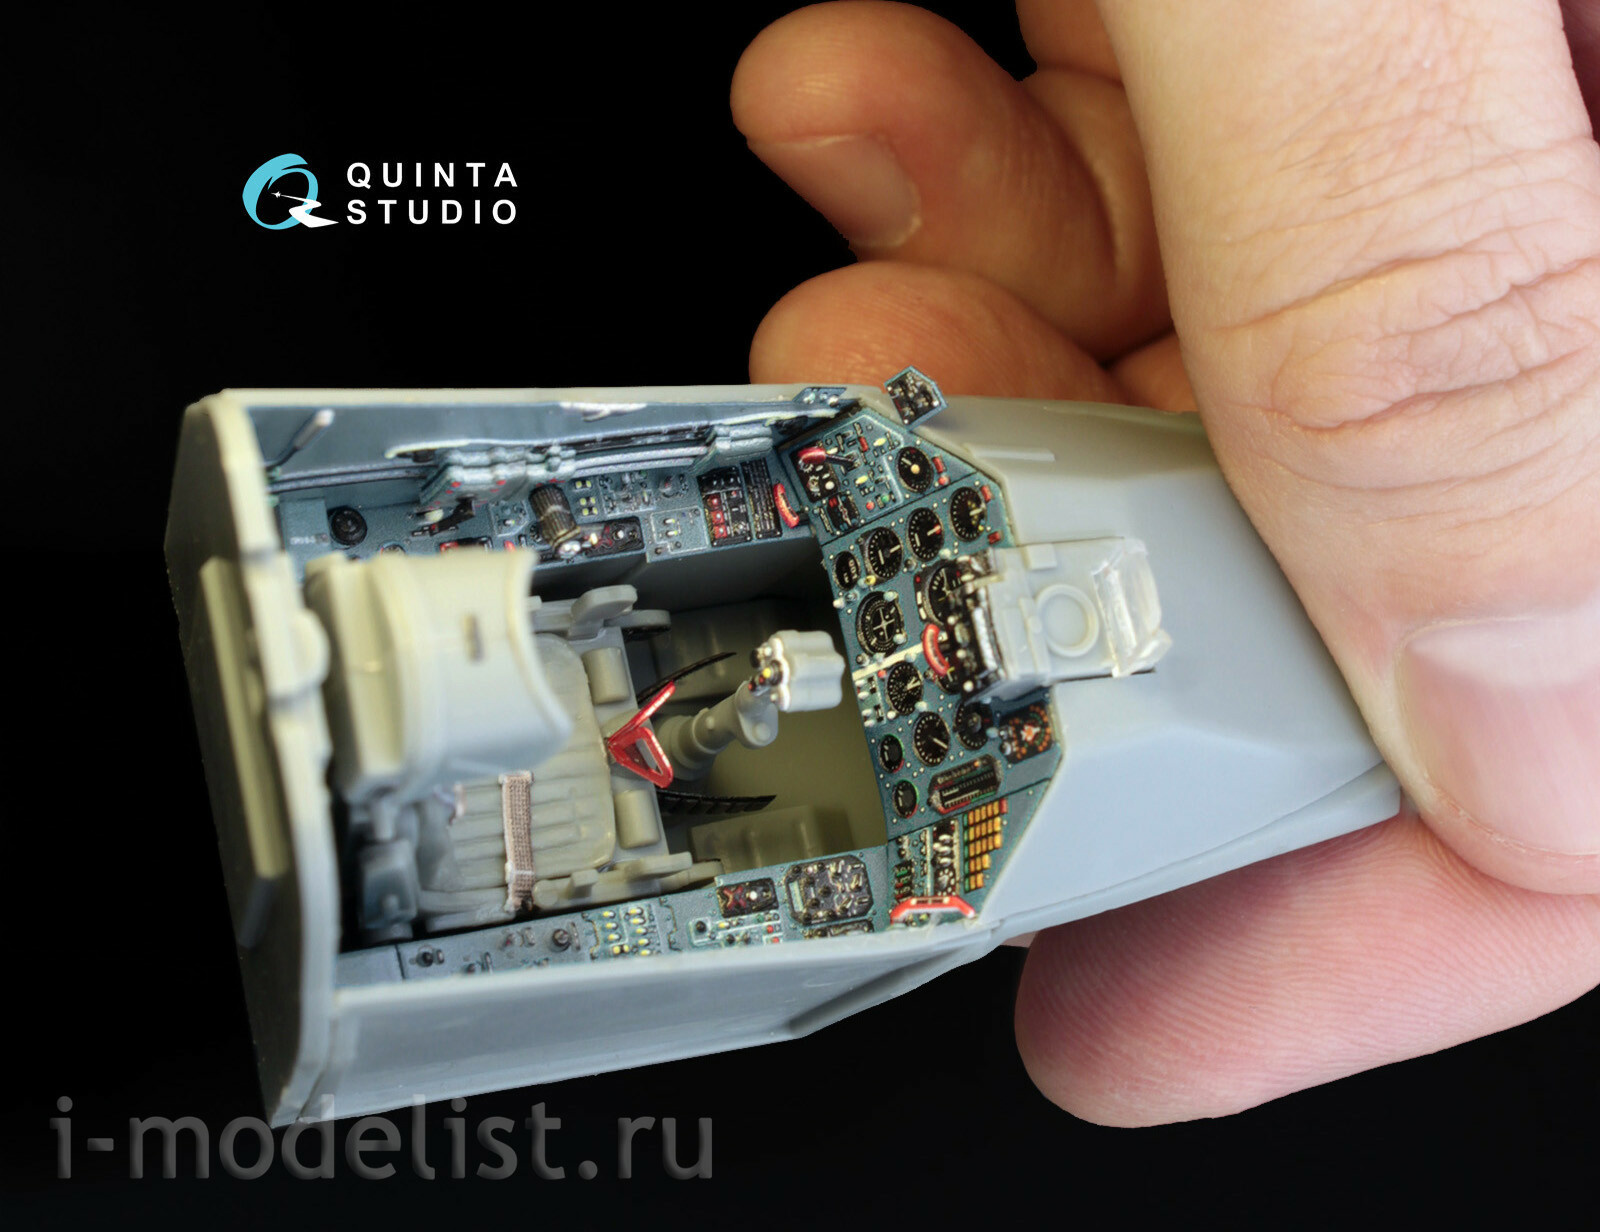 QD32001 Quinta Studio 1/32 3D Декаль интерьера кабины Суххой-Суххой-25 (для модели Трубач)